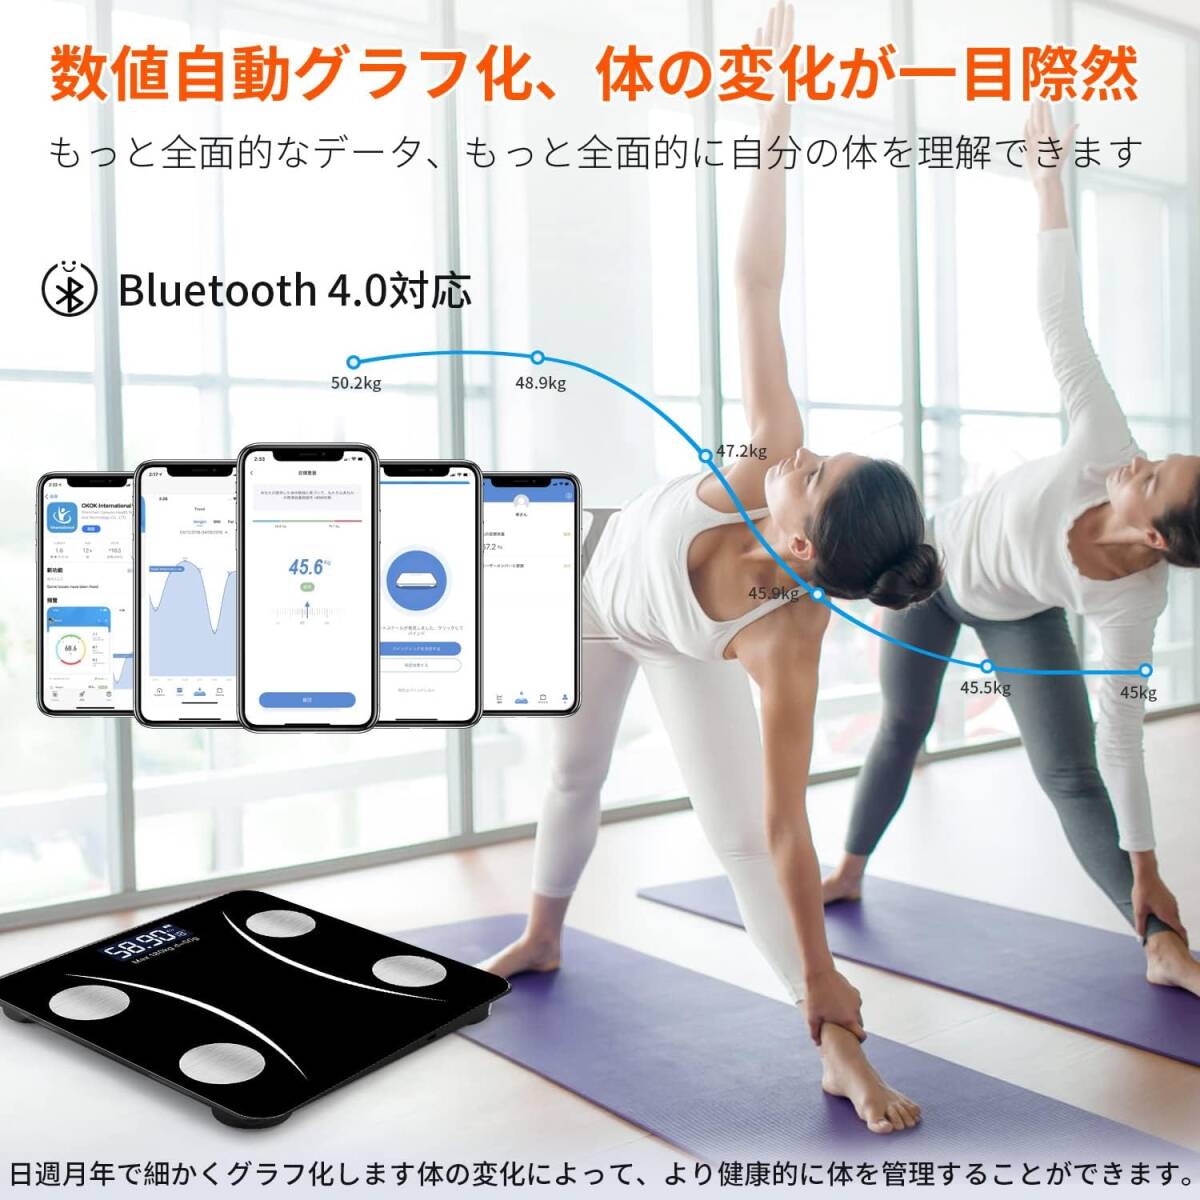 体重計 体脂肪計 Bluetooth 体組成計 スマホ連動 高精度/軽量収納 日本語APP iOS/Android対応 ボディスケール 日本語取扱説明書